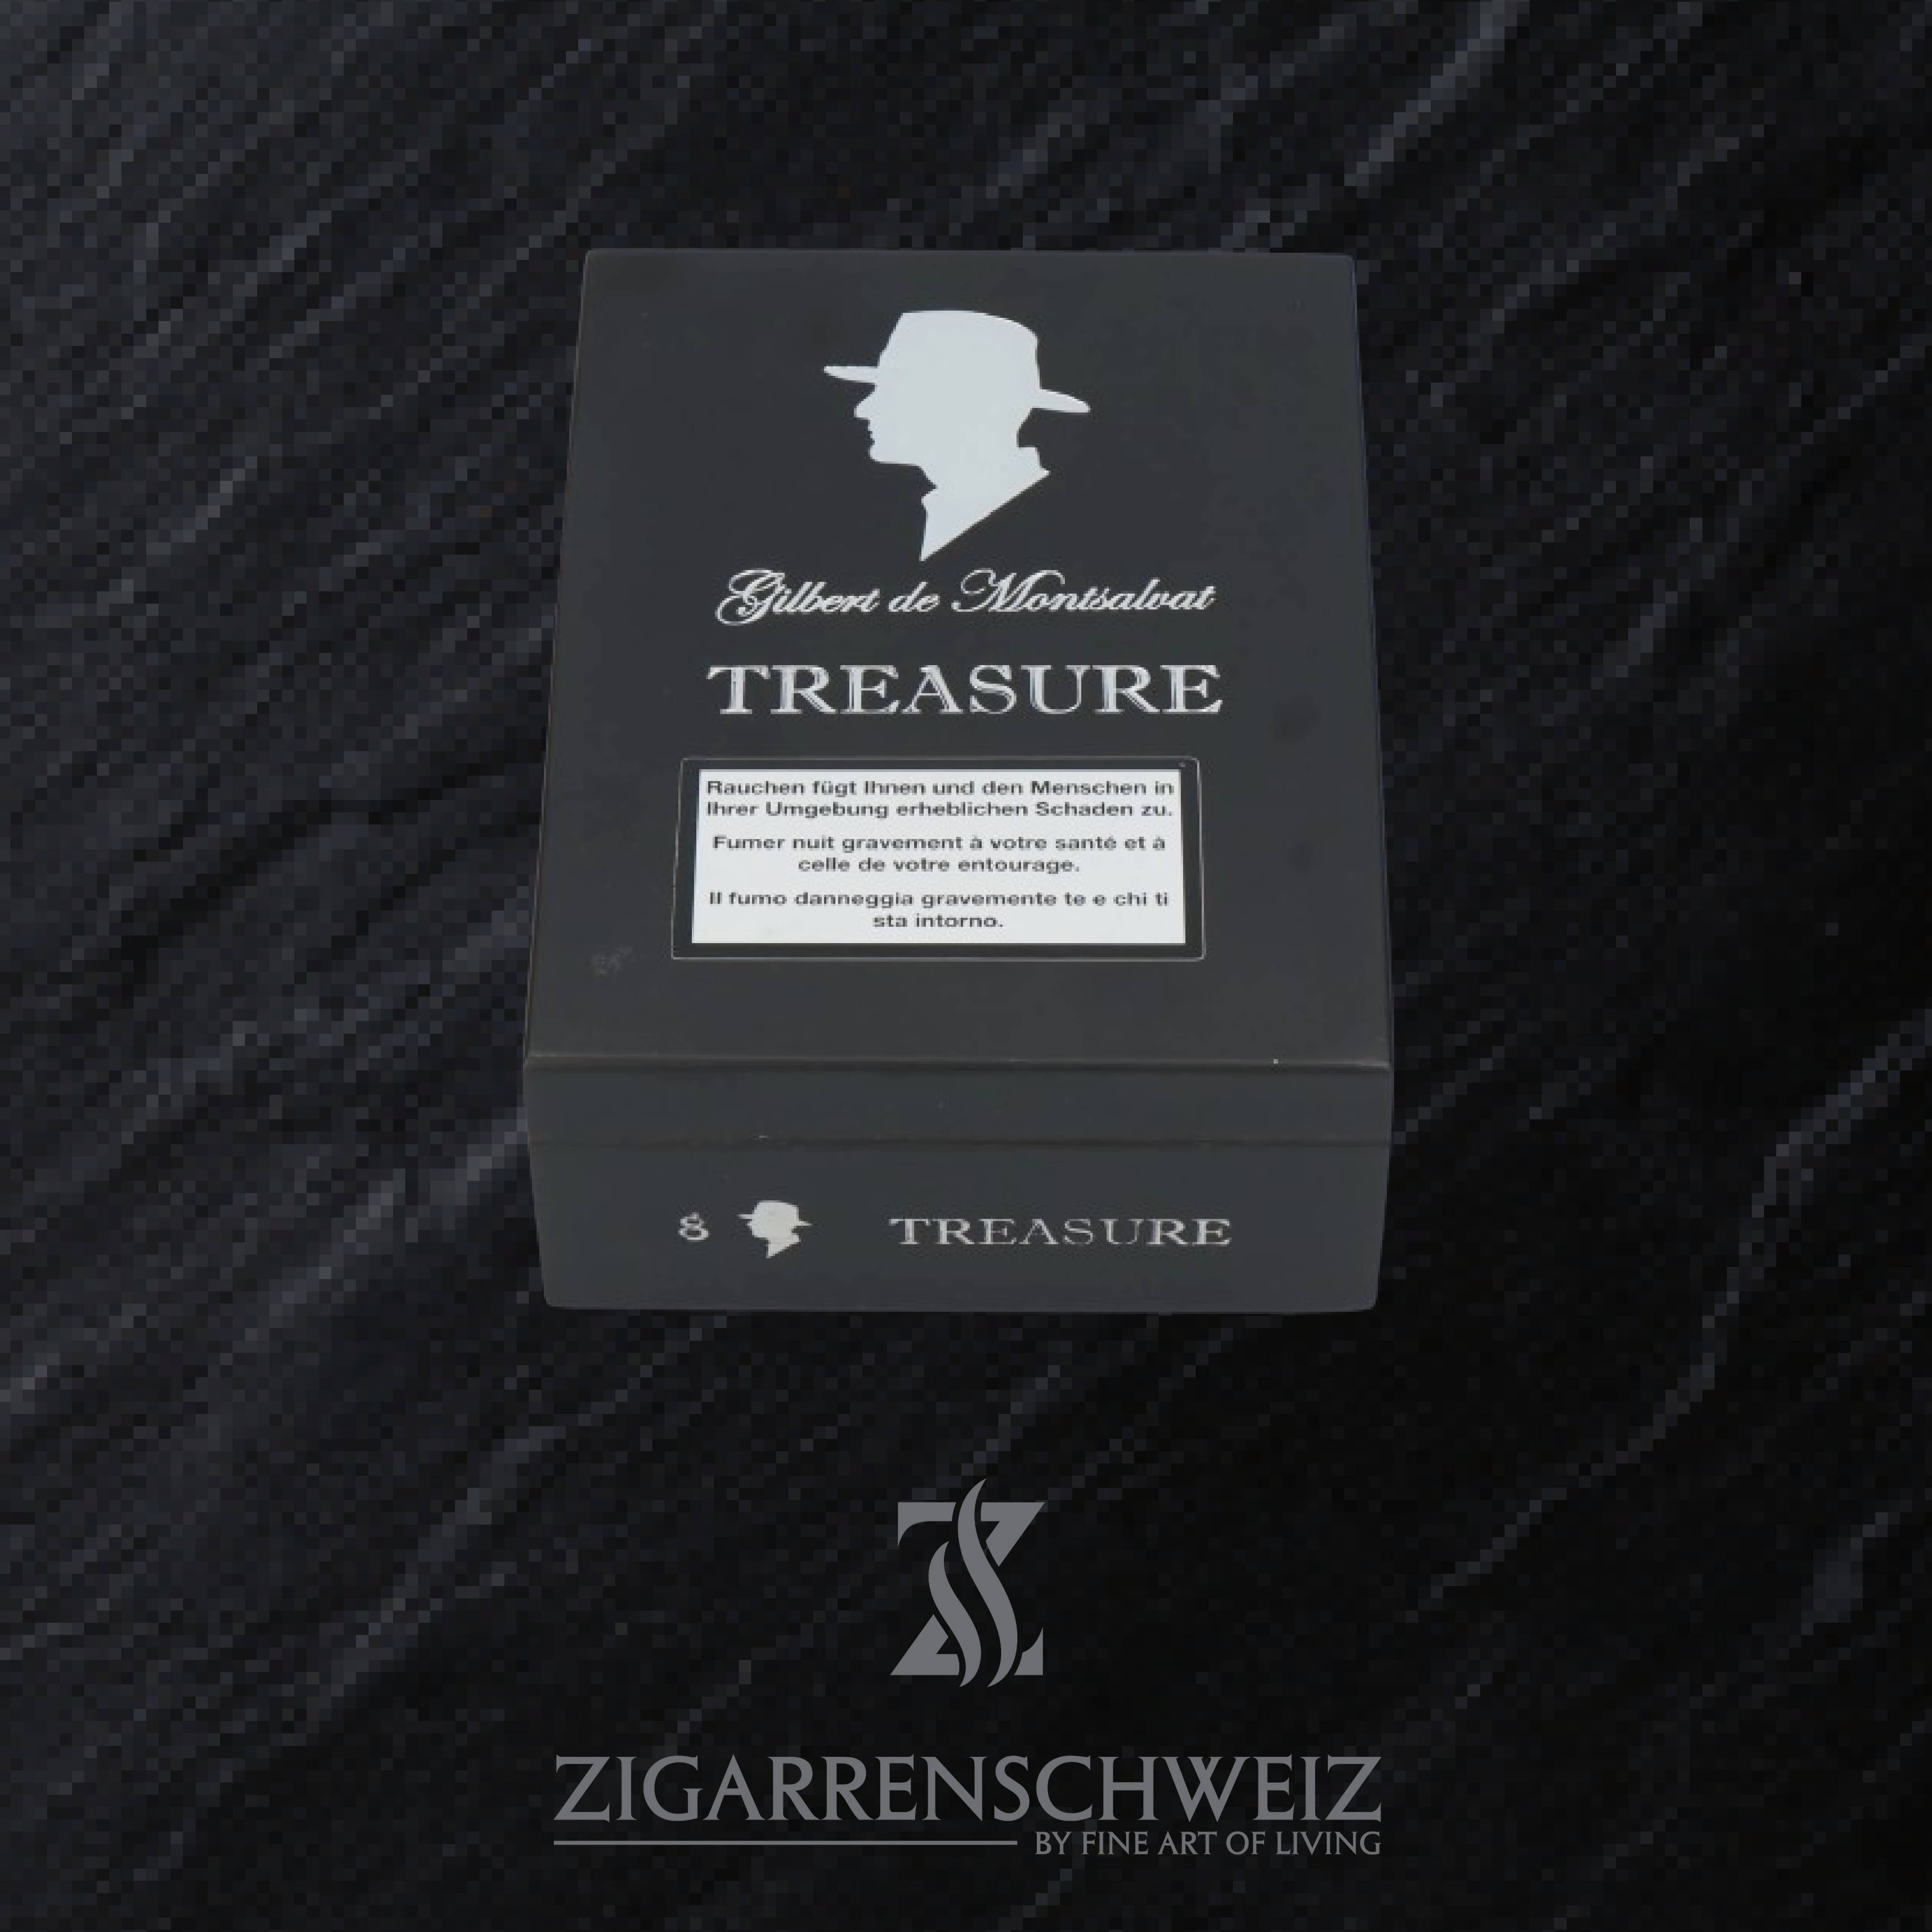 Gilbert de Montsalvat Treasure Super Gordo Zigarren Kiste geschlossen